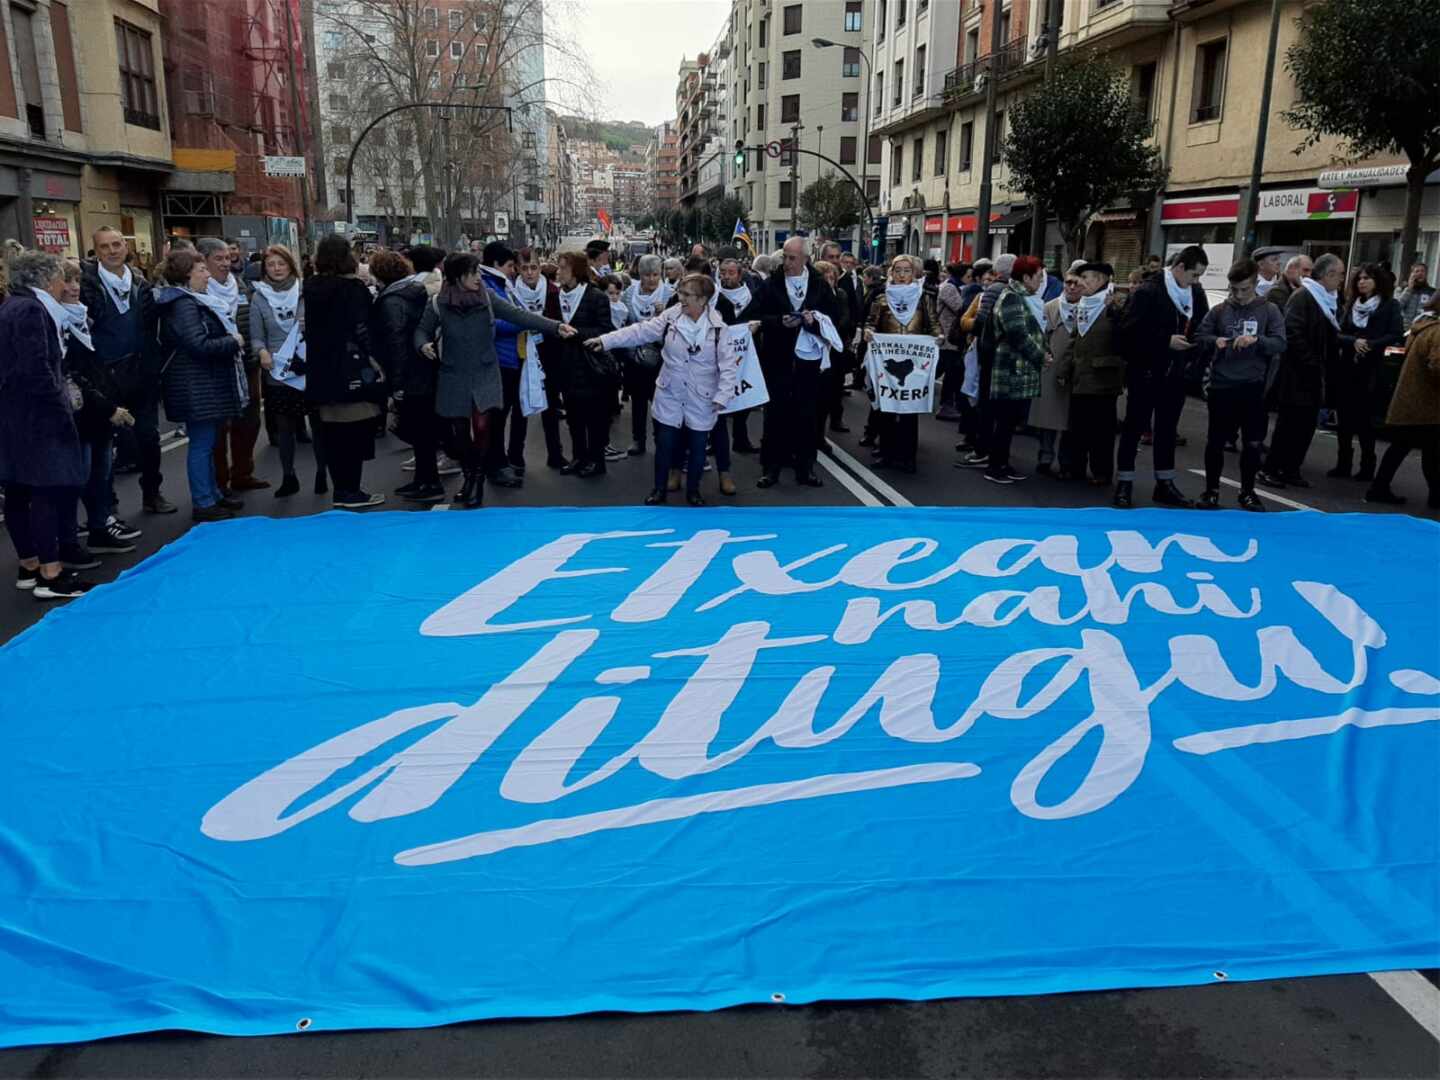 Sare retoma en Navarra las 'marchas solidarias' con los presos de ETA